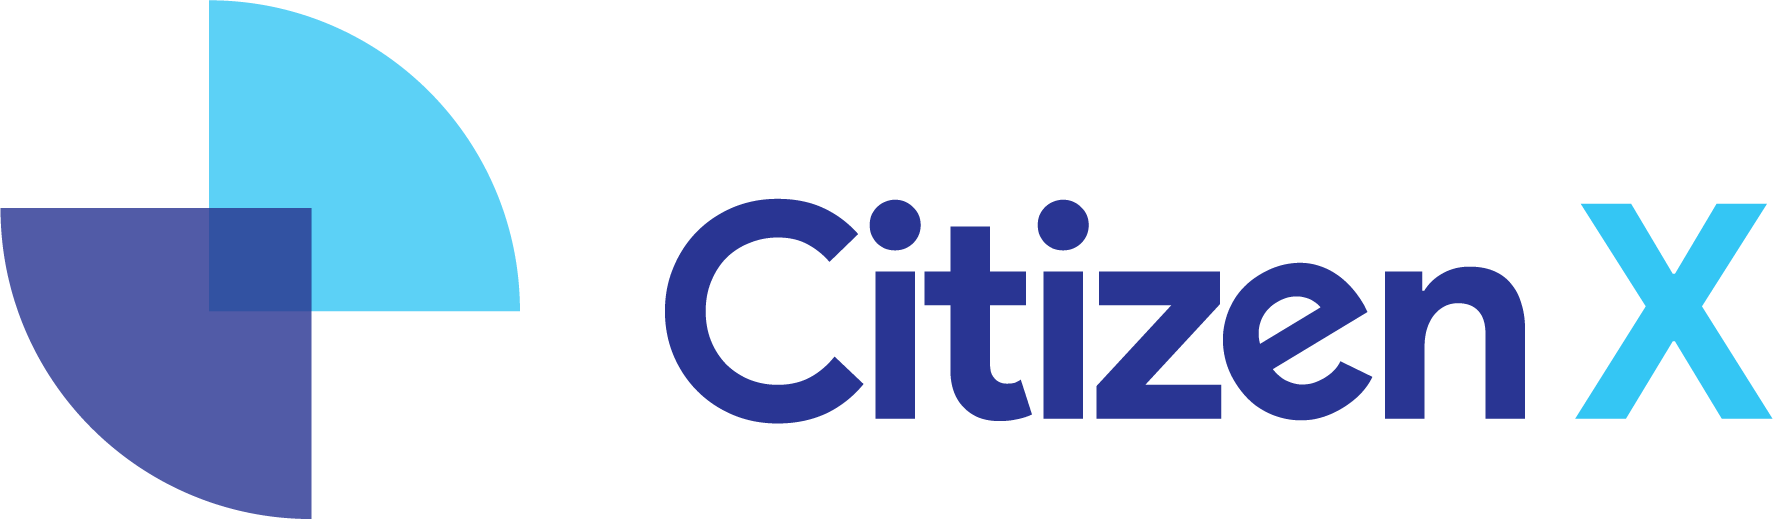 CitizenX Crypto Ventures Fund, L.P.